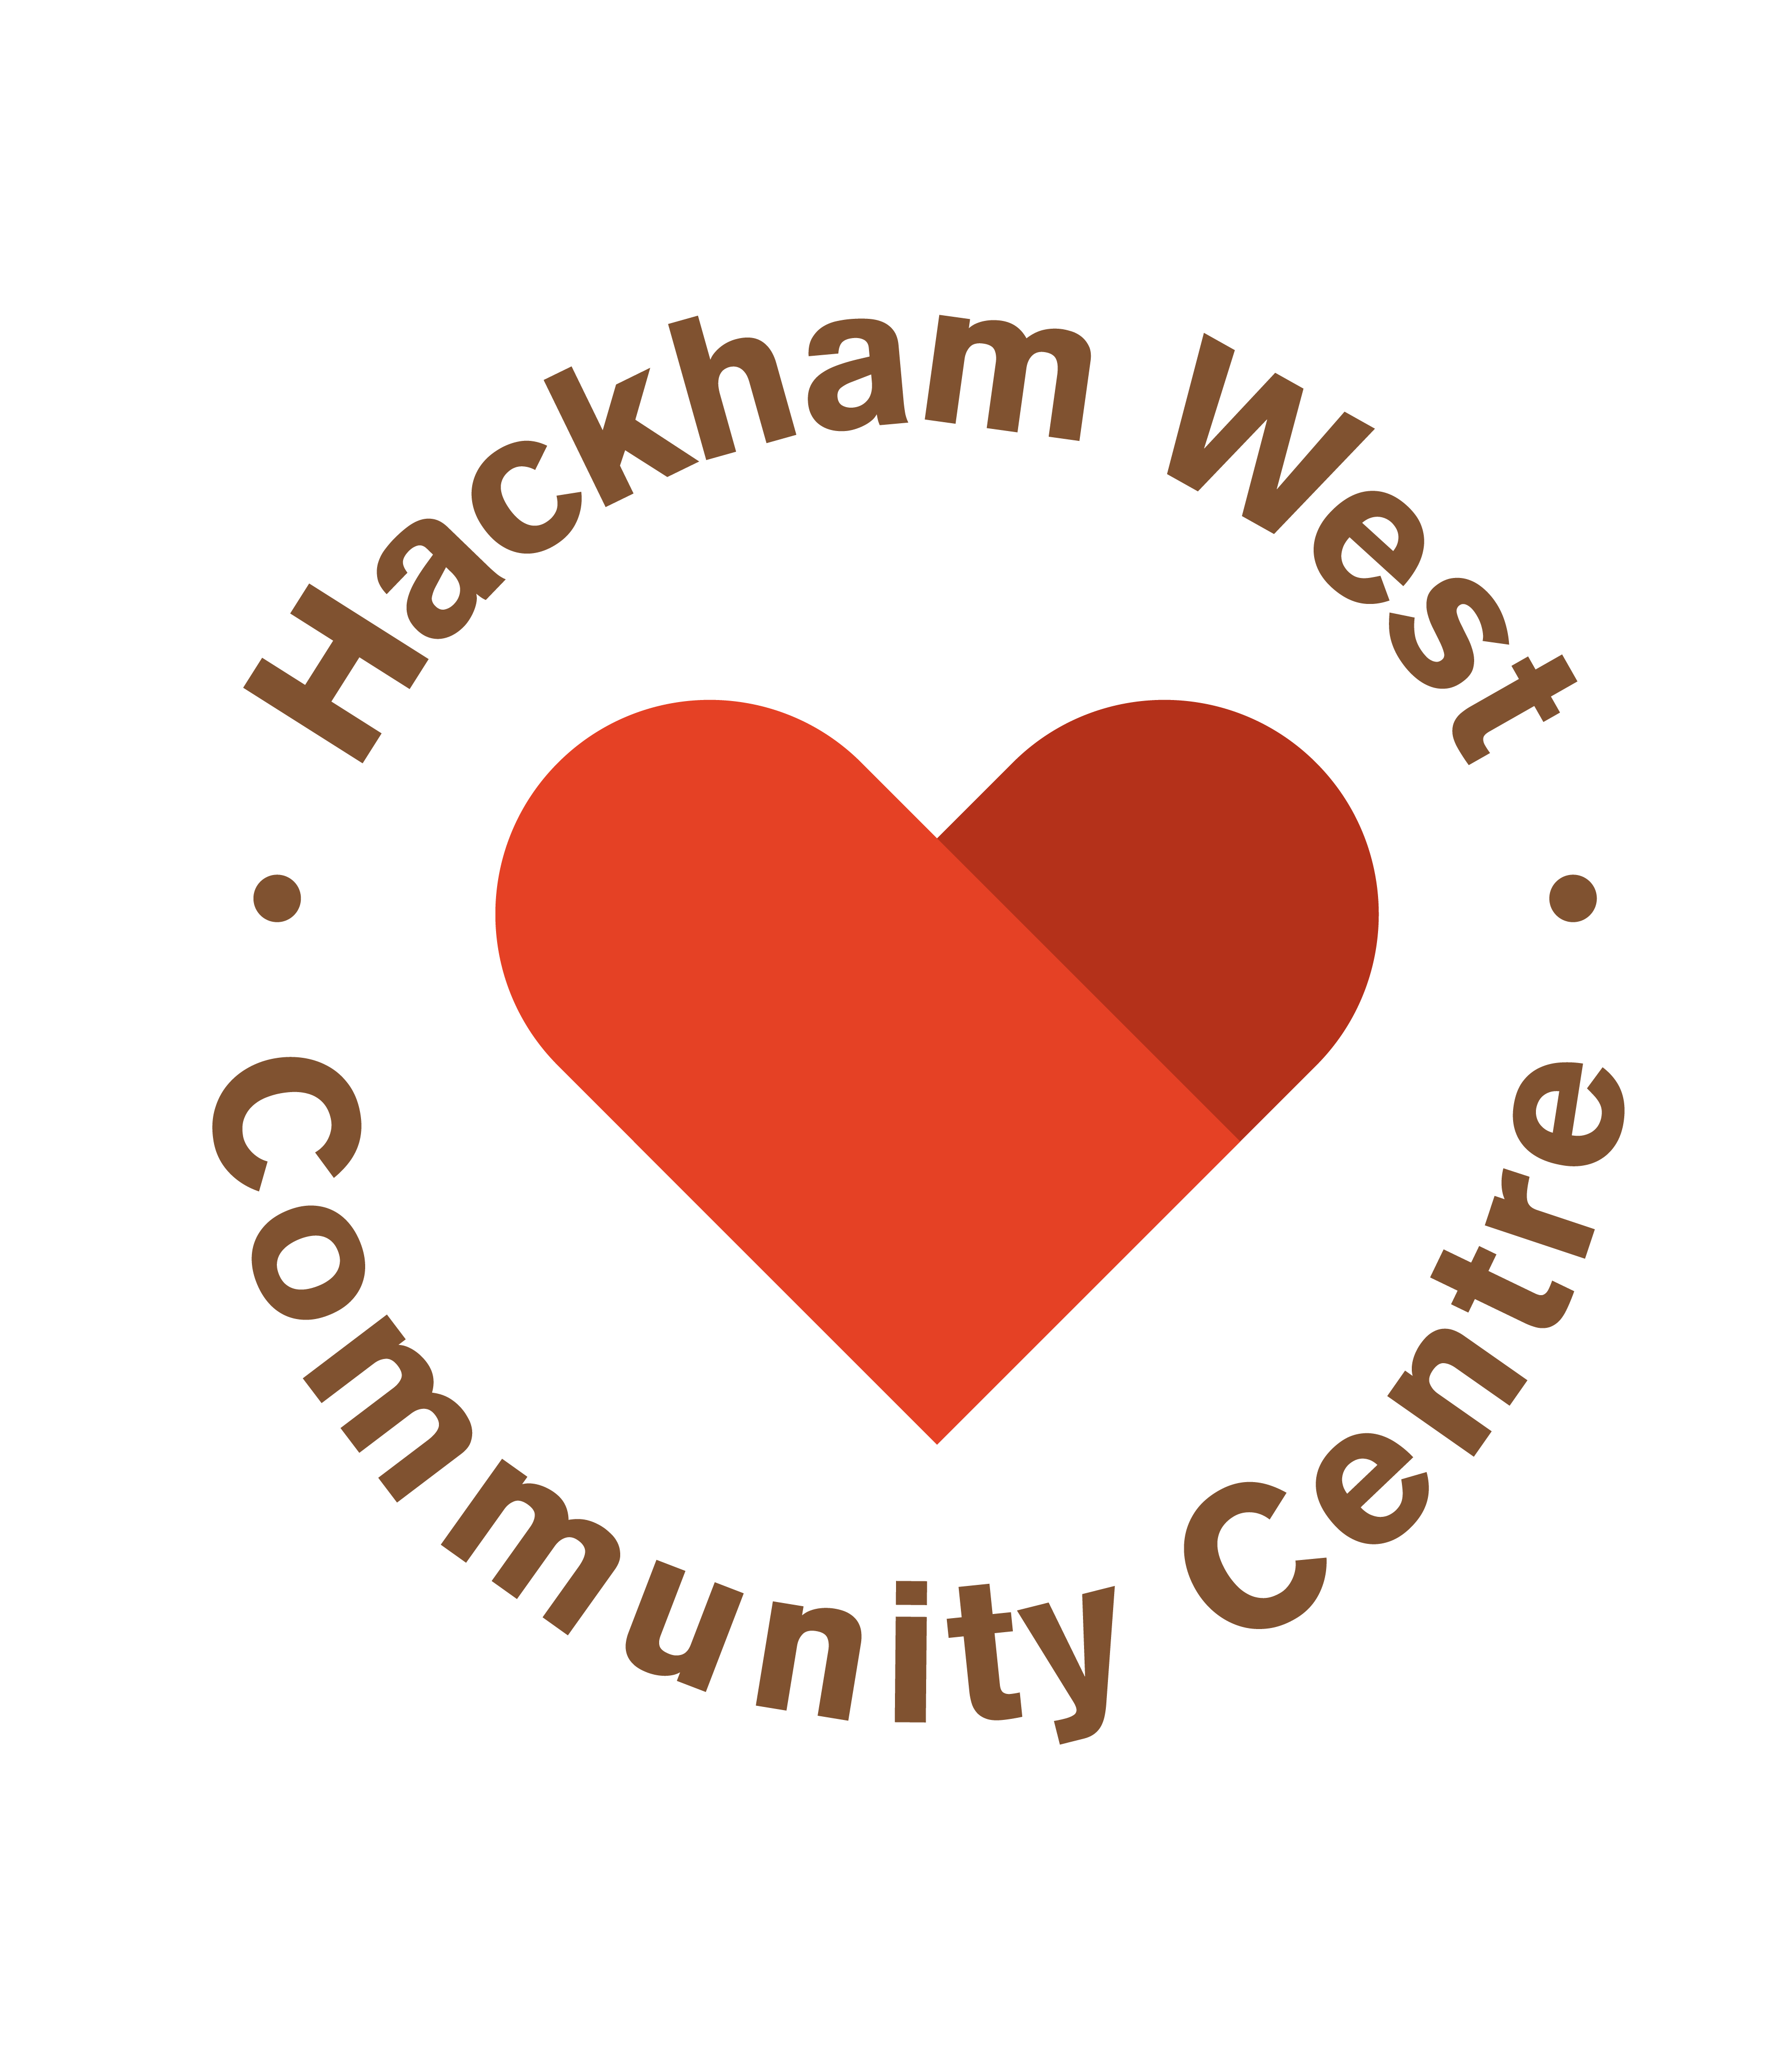 Hackham West Community Centre